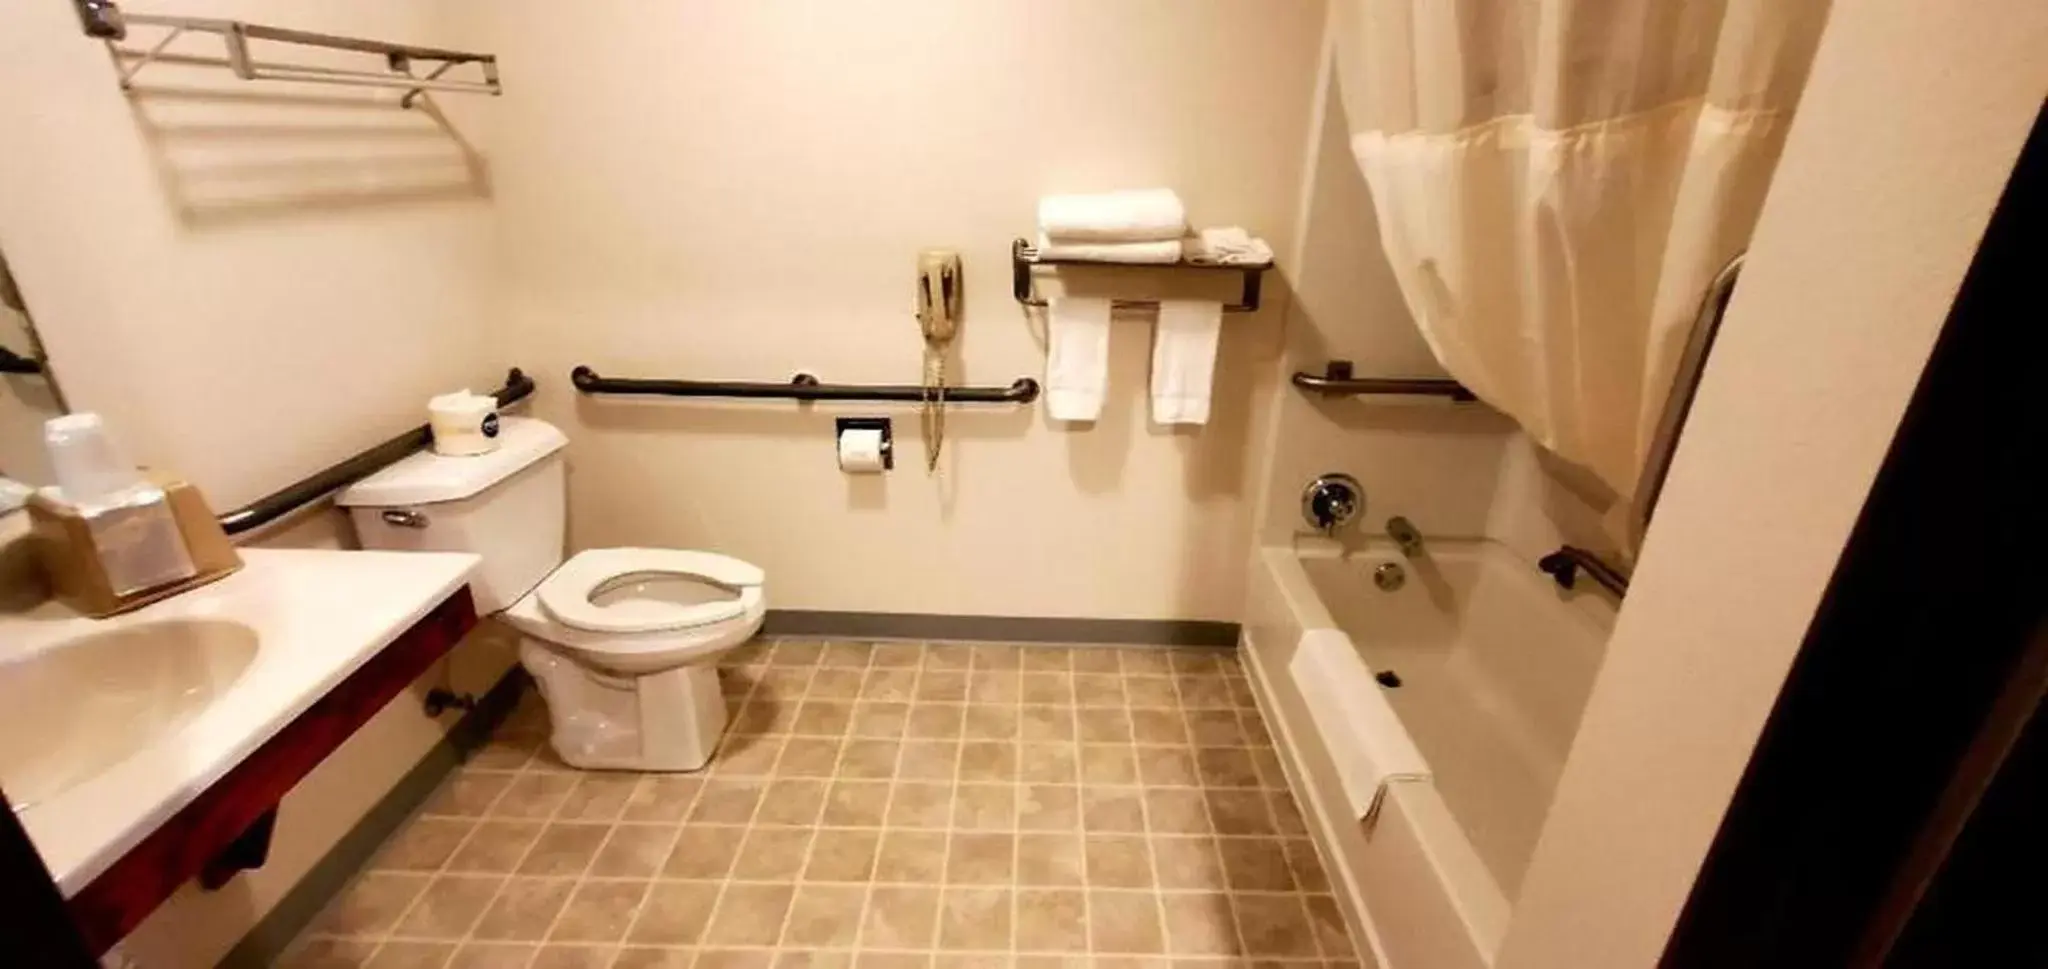 Bathroom in Gettysburg Inn and Suites